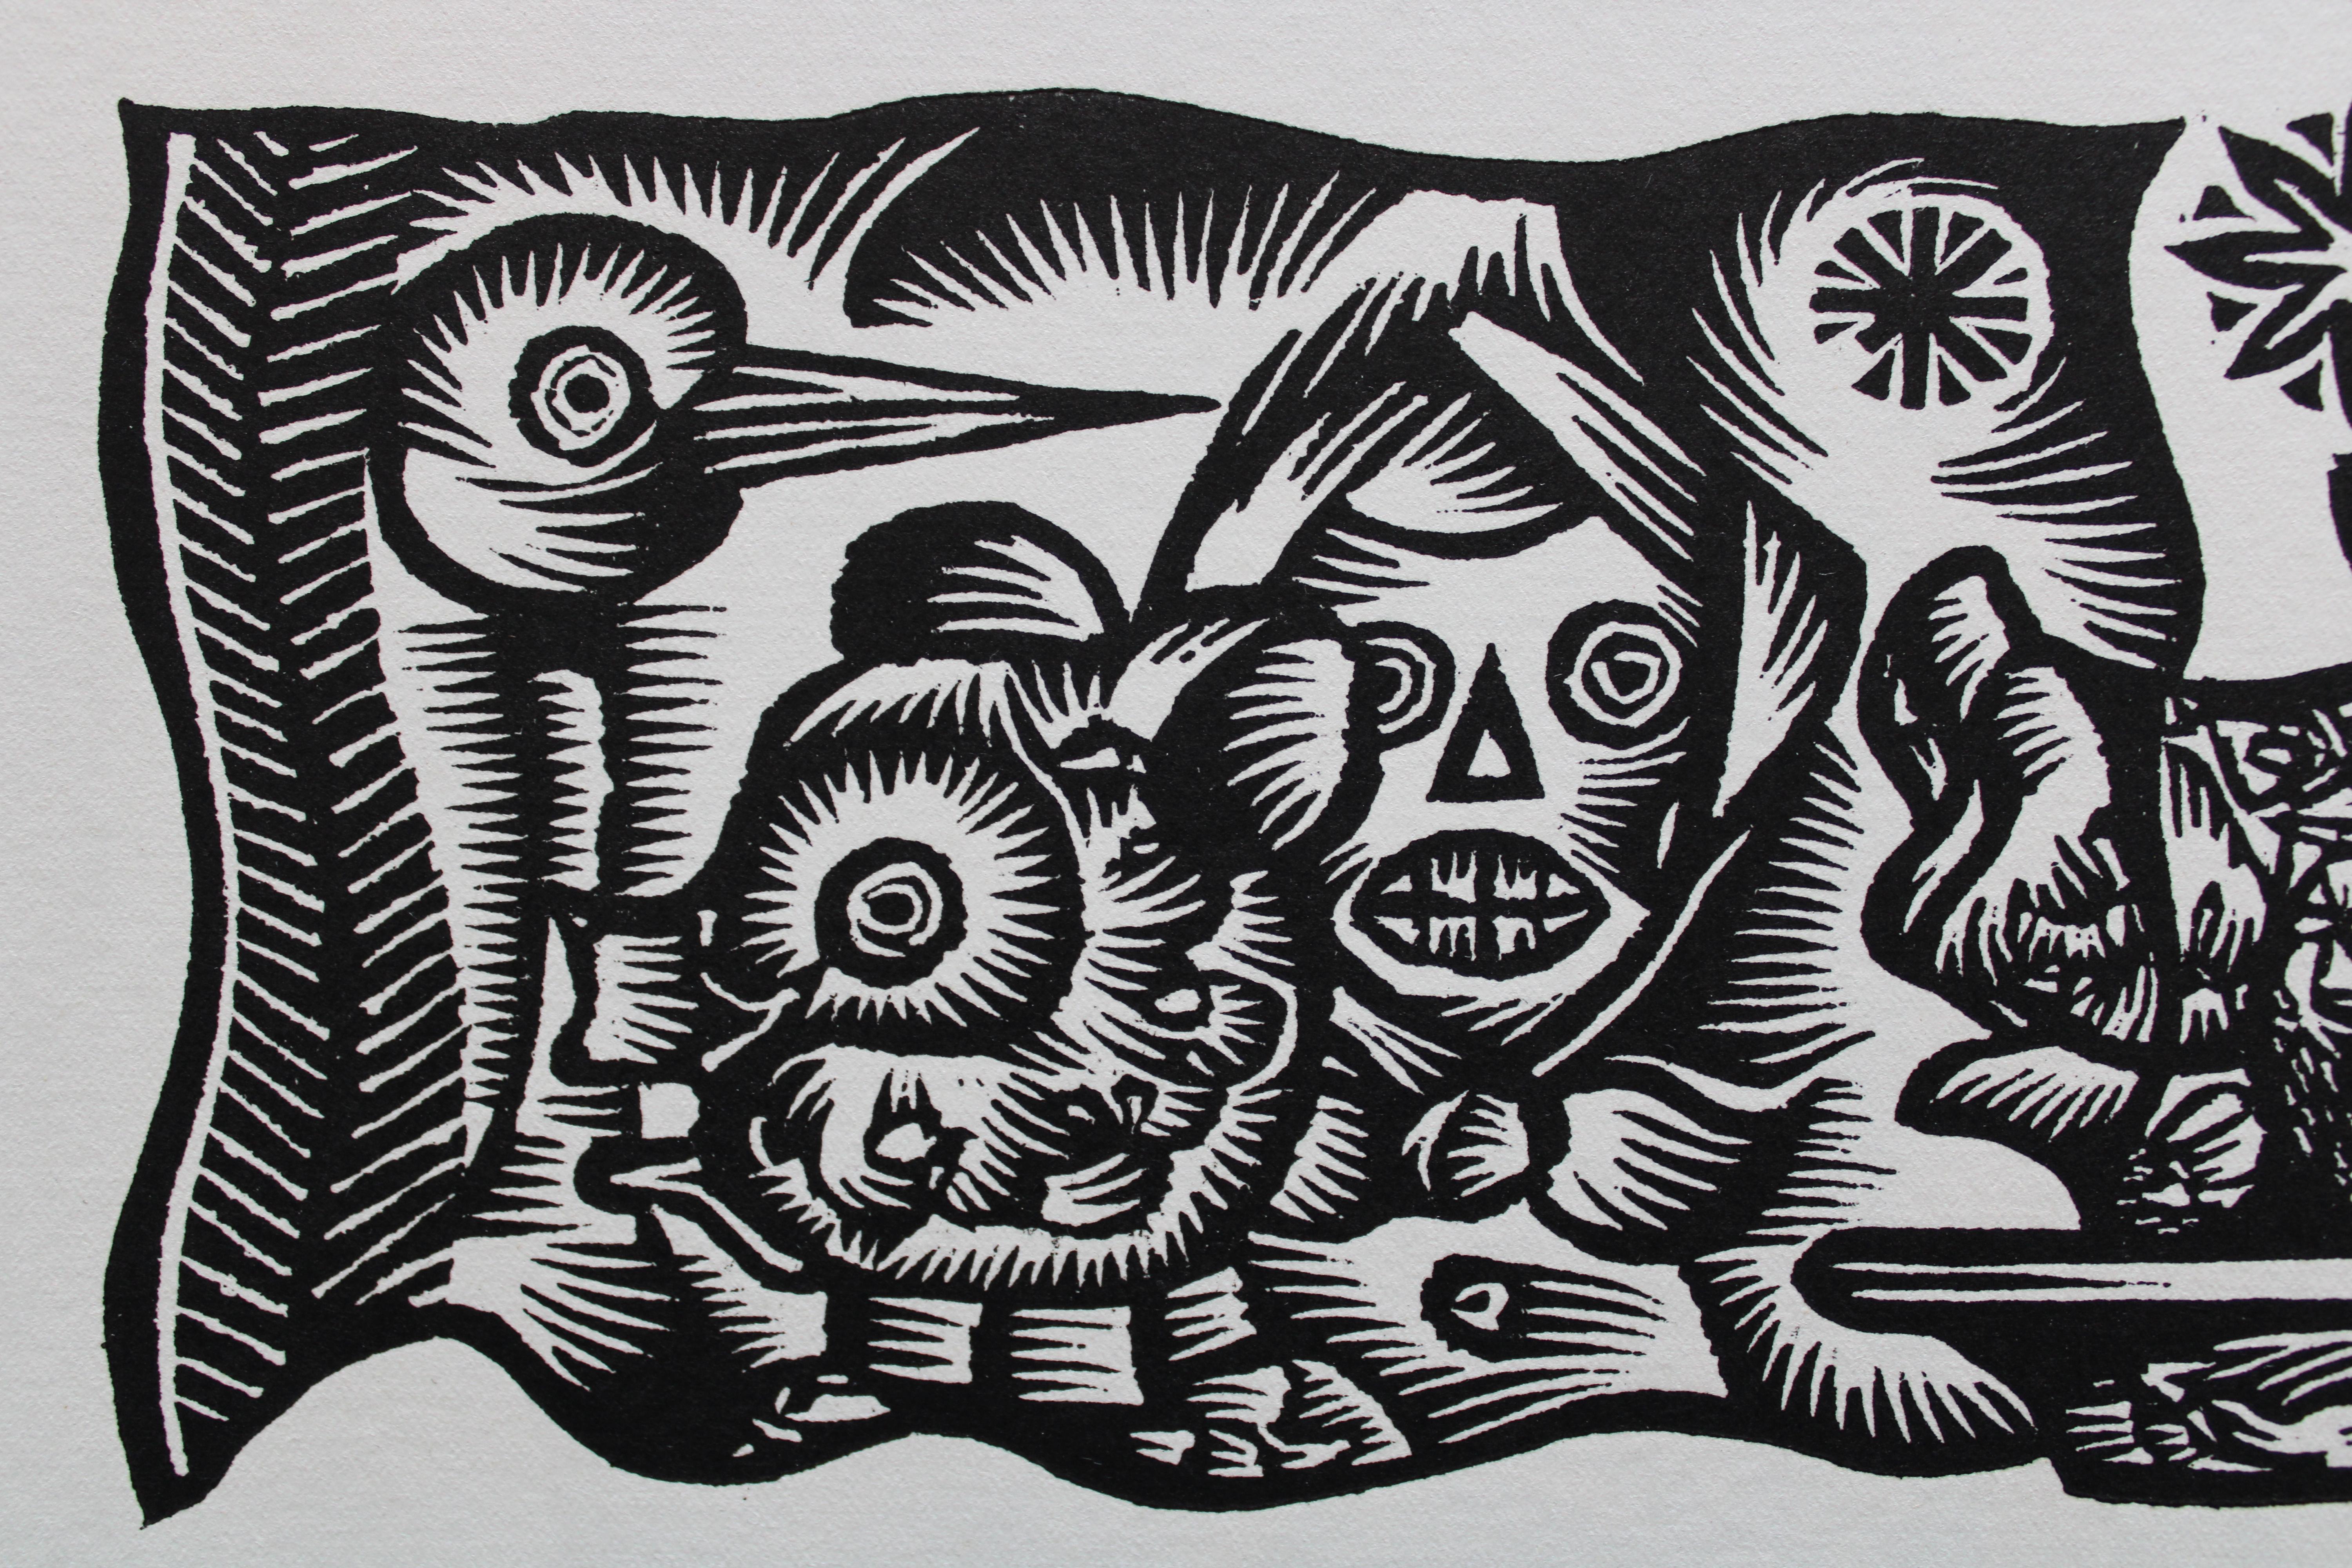 Fêtes et chants. 1984. Papier, linogravure, 20 x 34 cm - Print de Dainis Rozkalns